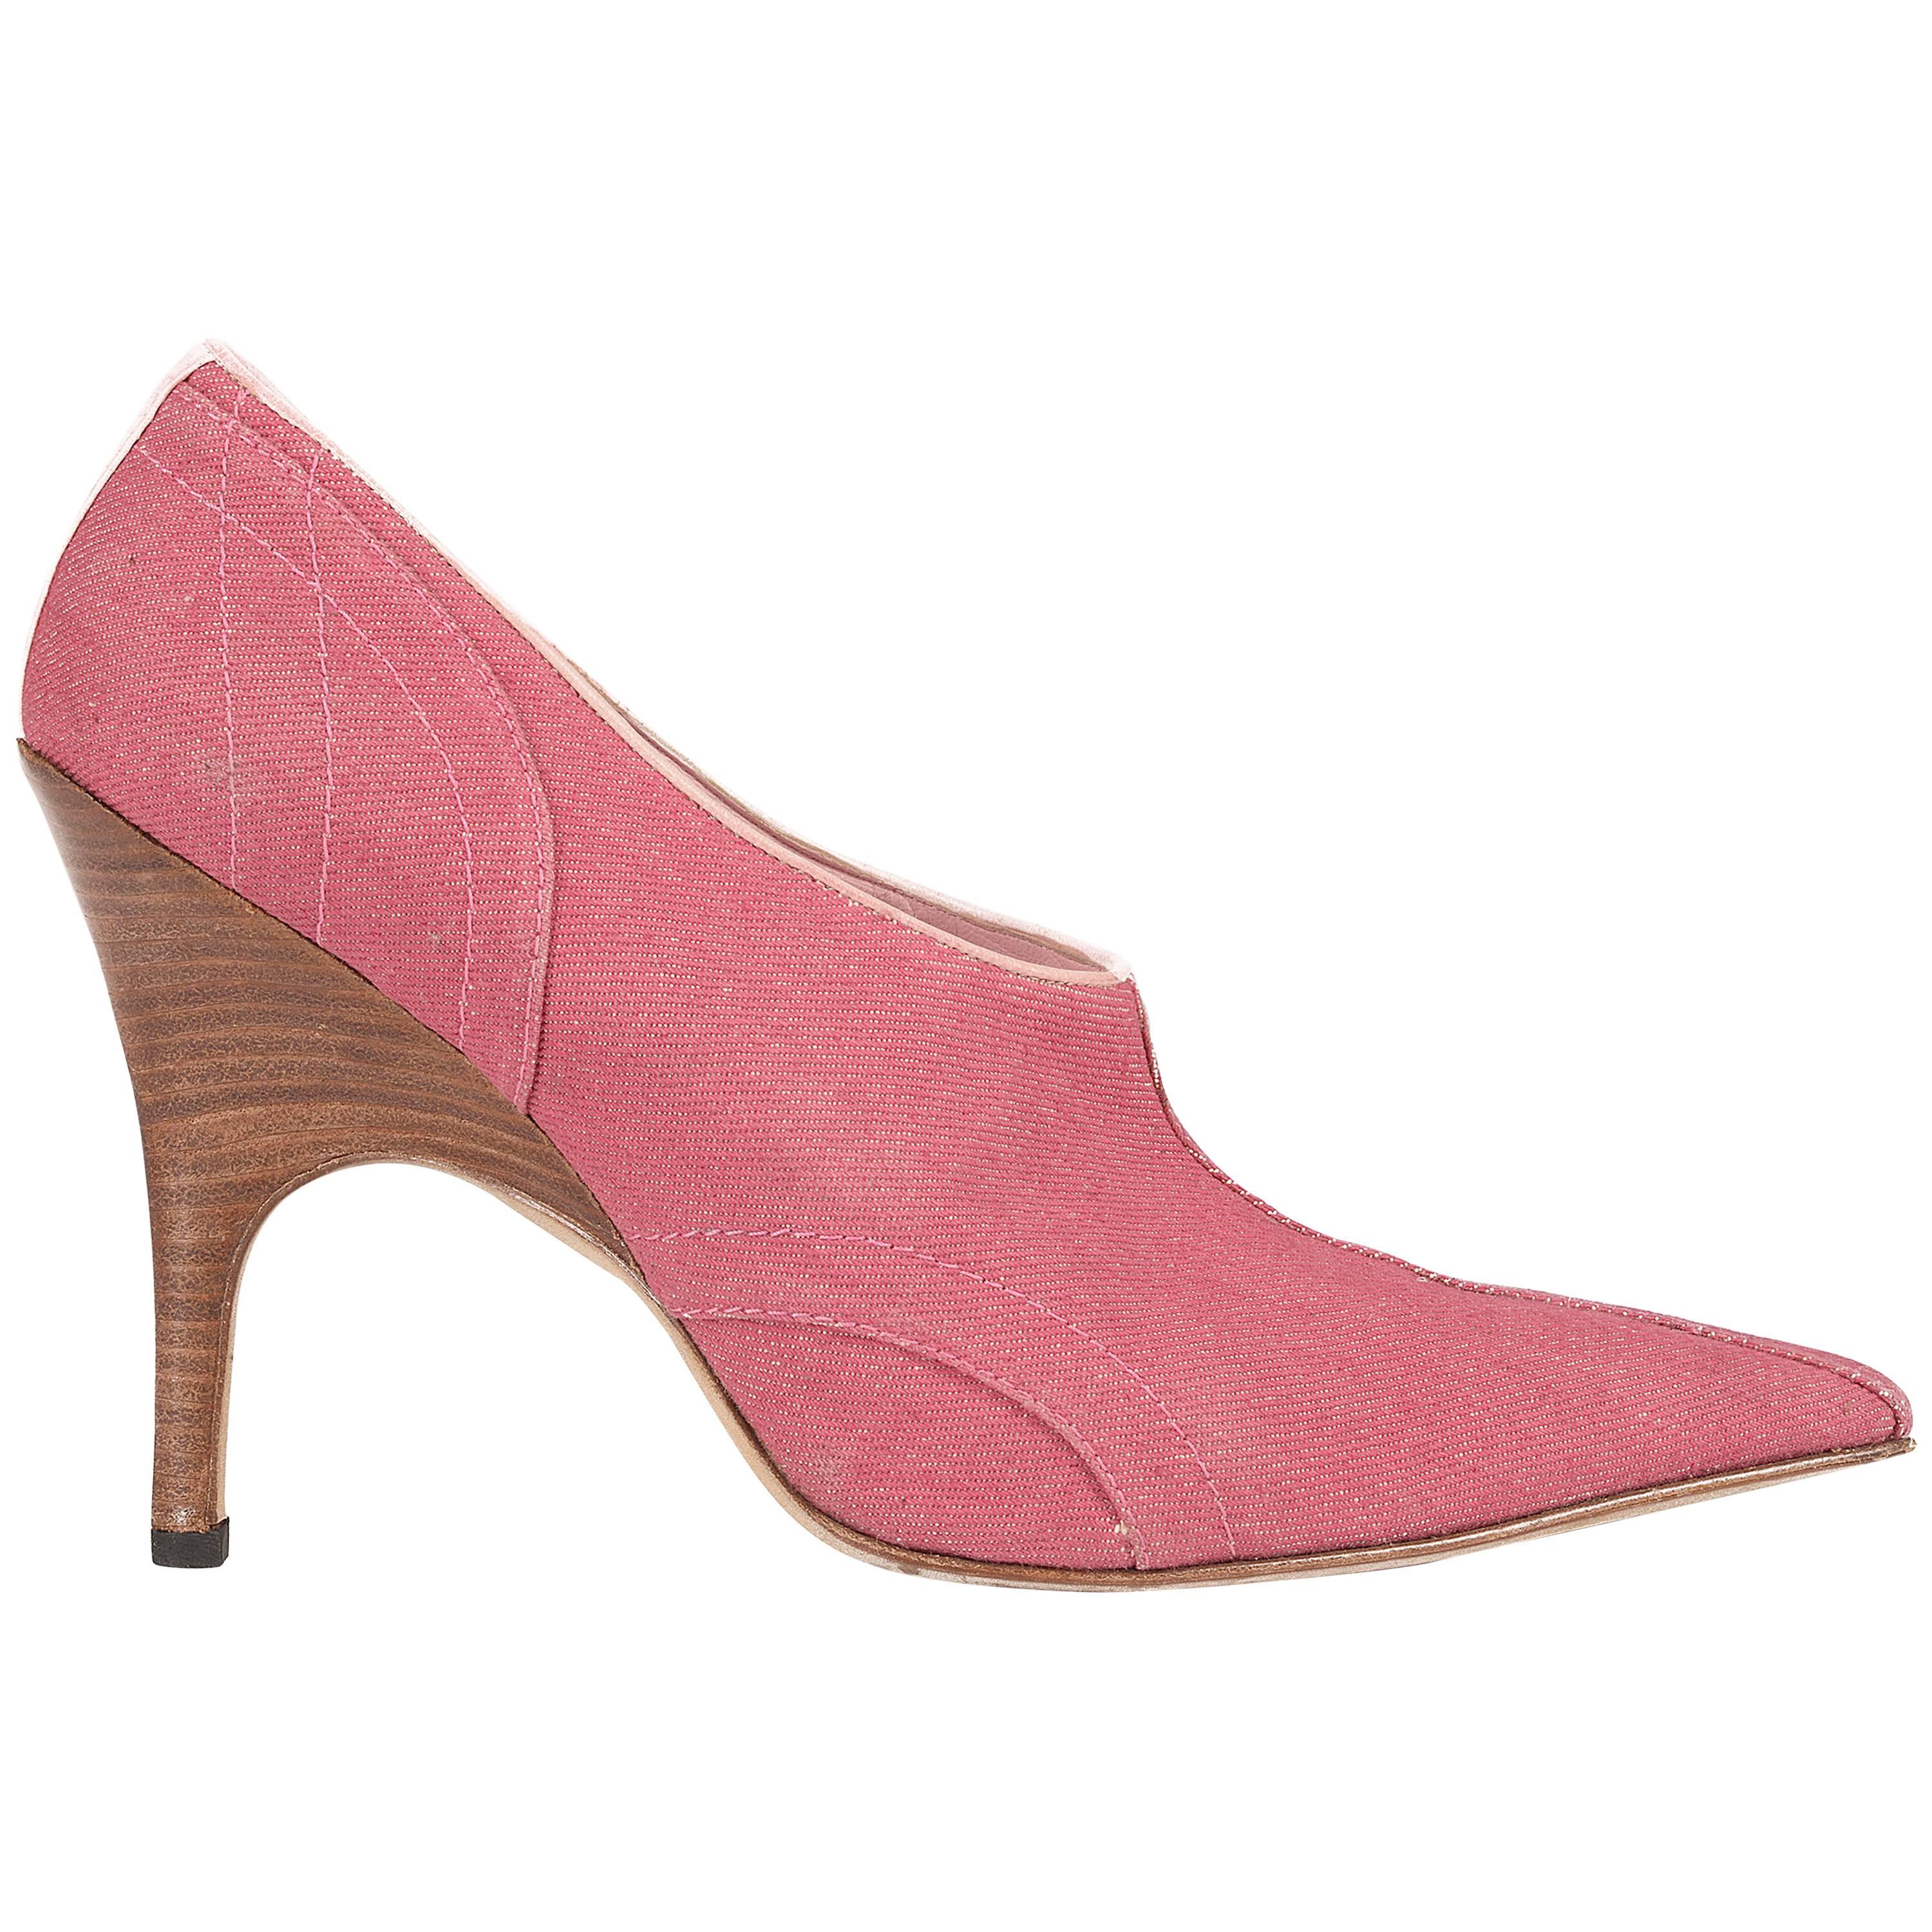 Alexander McQueen pink denim pointed boots with wooden heels,  sz 41